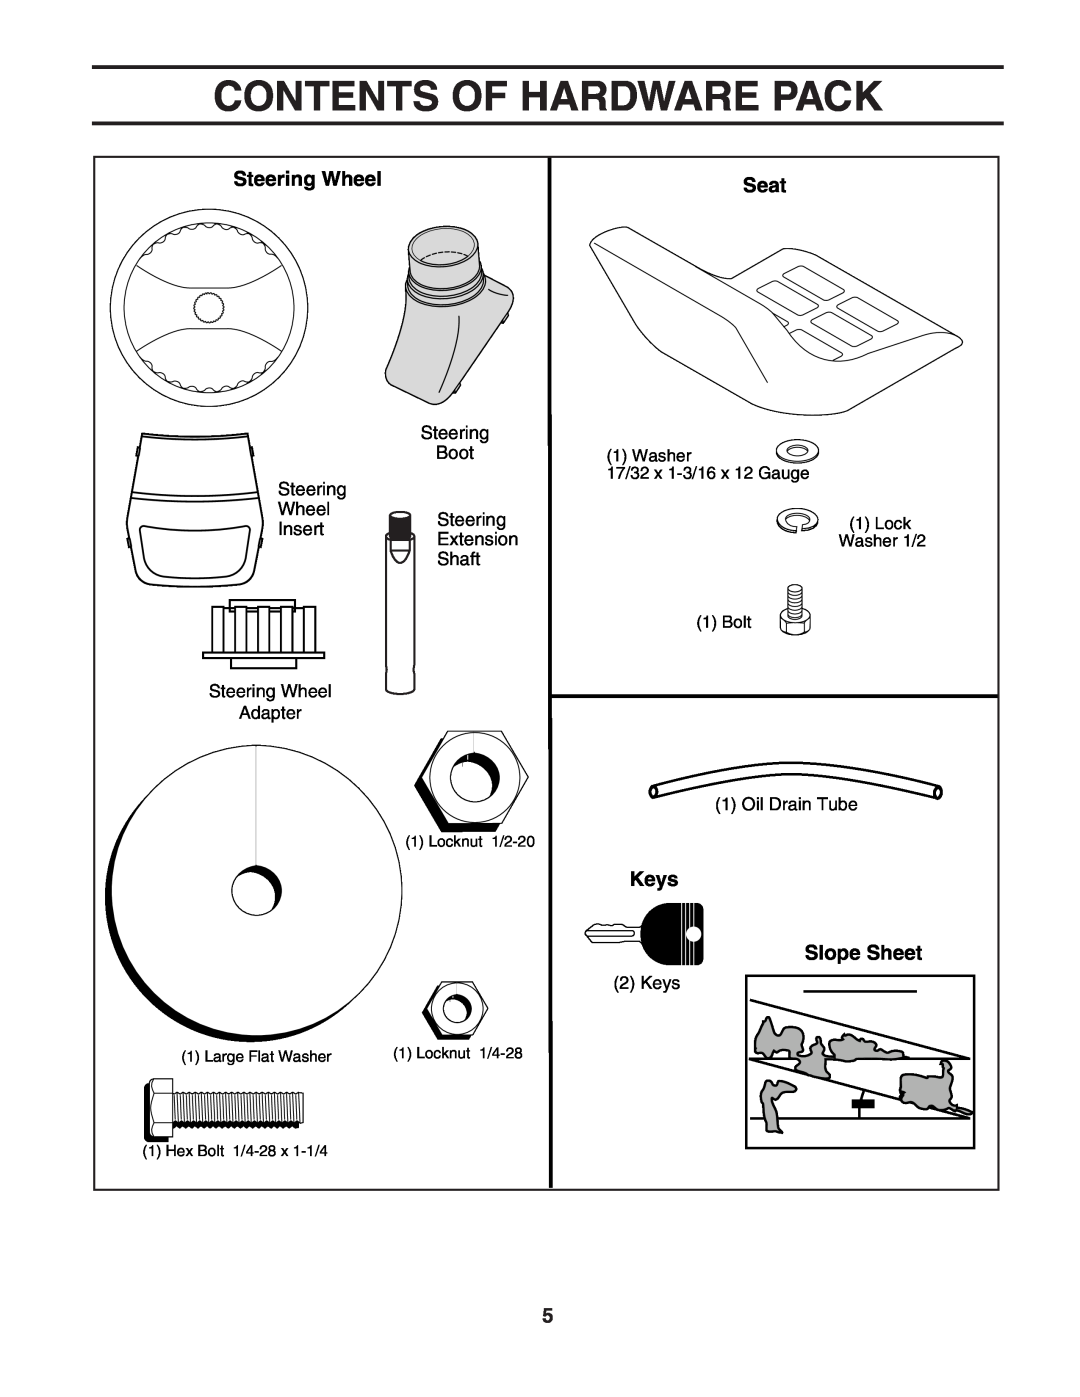 Poulan 187594 manual Contents Of Hardware Pack, Steering Wheel, Seat, Keys, Slope Sheet 